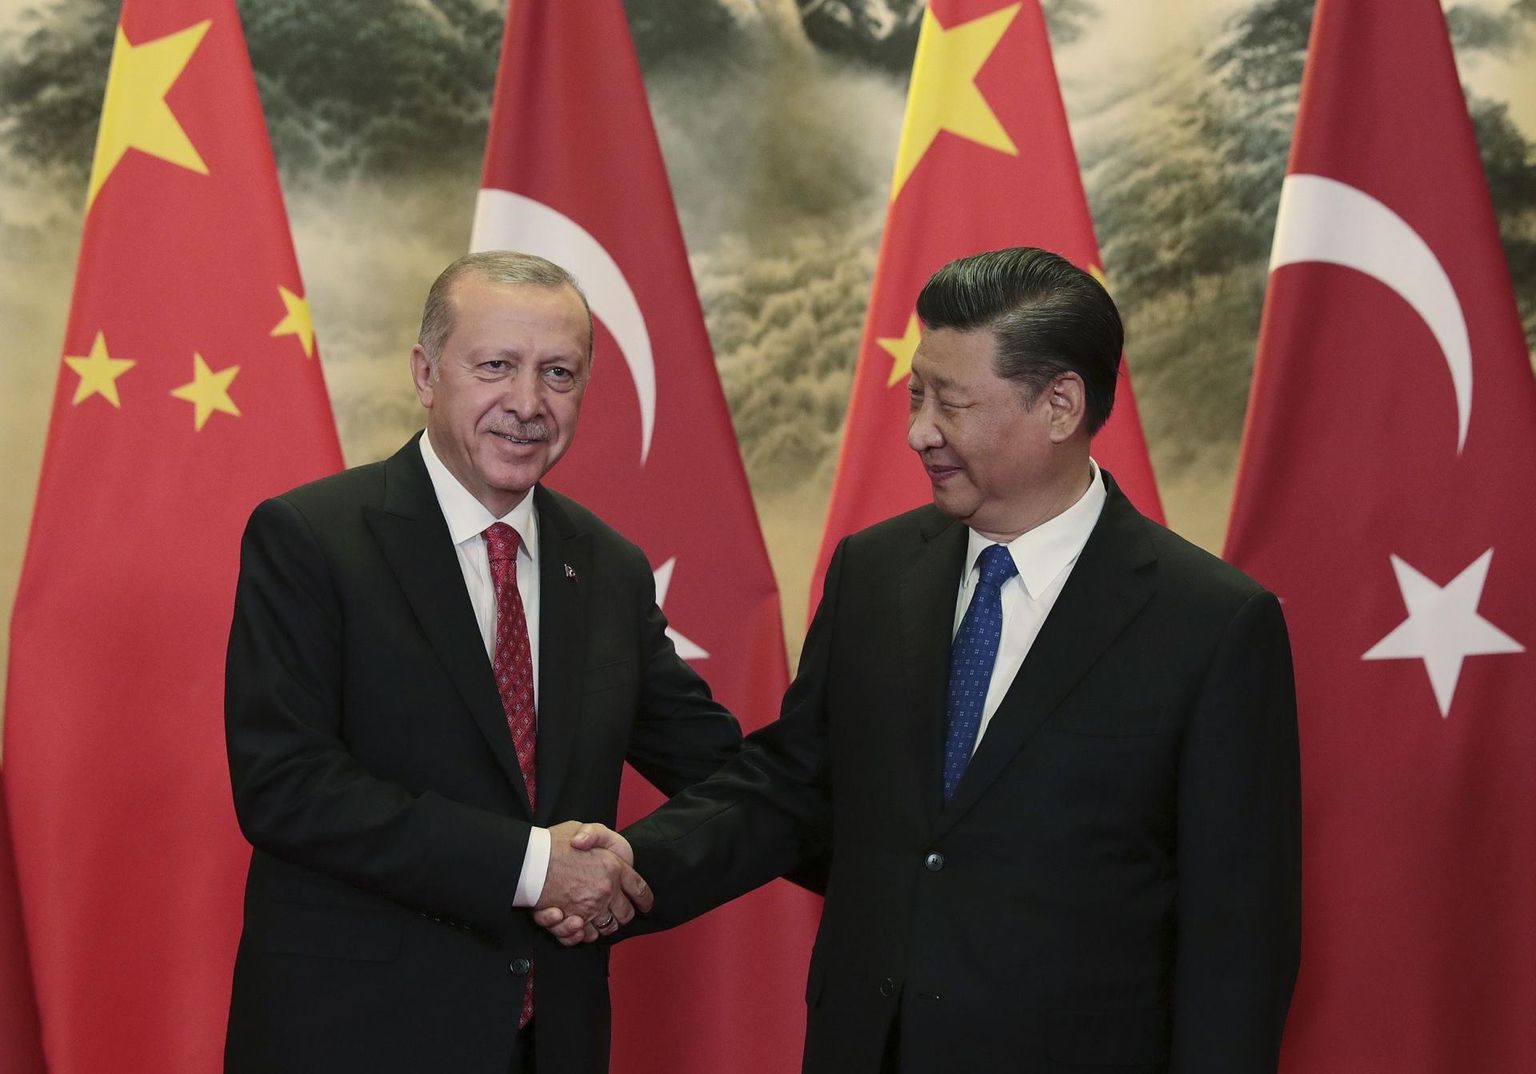 Türgi president Recep Tayyip Erdogan ja tema Hiina kolleeg Xi Jinping poolteist aastat tagasi Pekingis. Ehkki Kesk-Aasia riikide elanikud on enamasti turgi juurtega, kasvab piirkonnas Hiina mõjuvõim ja Türgi positsioonid nõrgenevad.